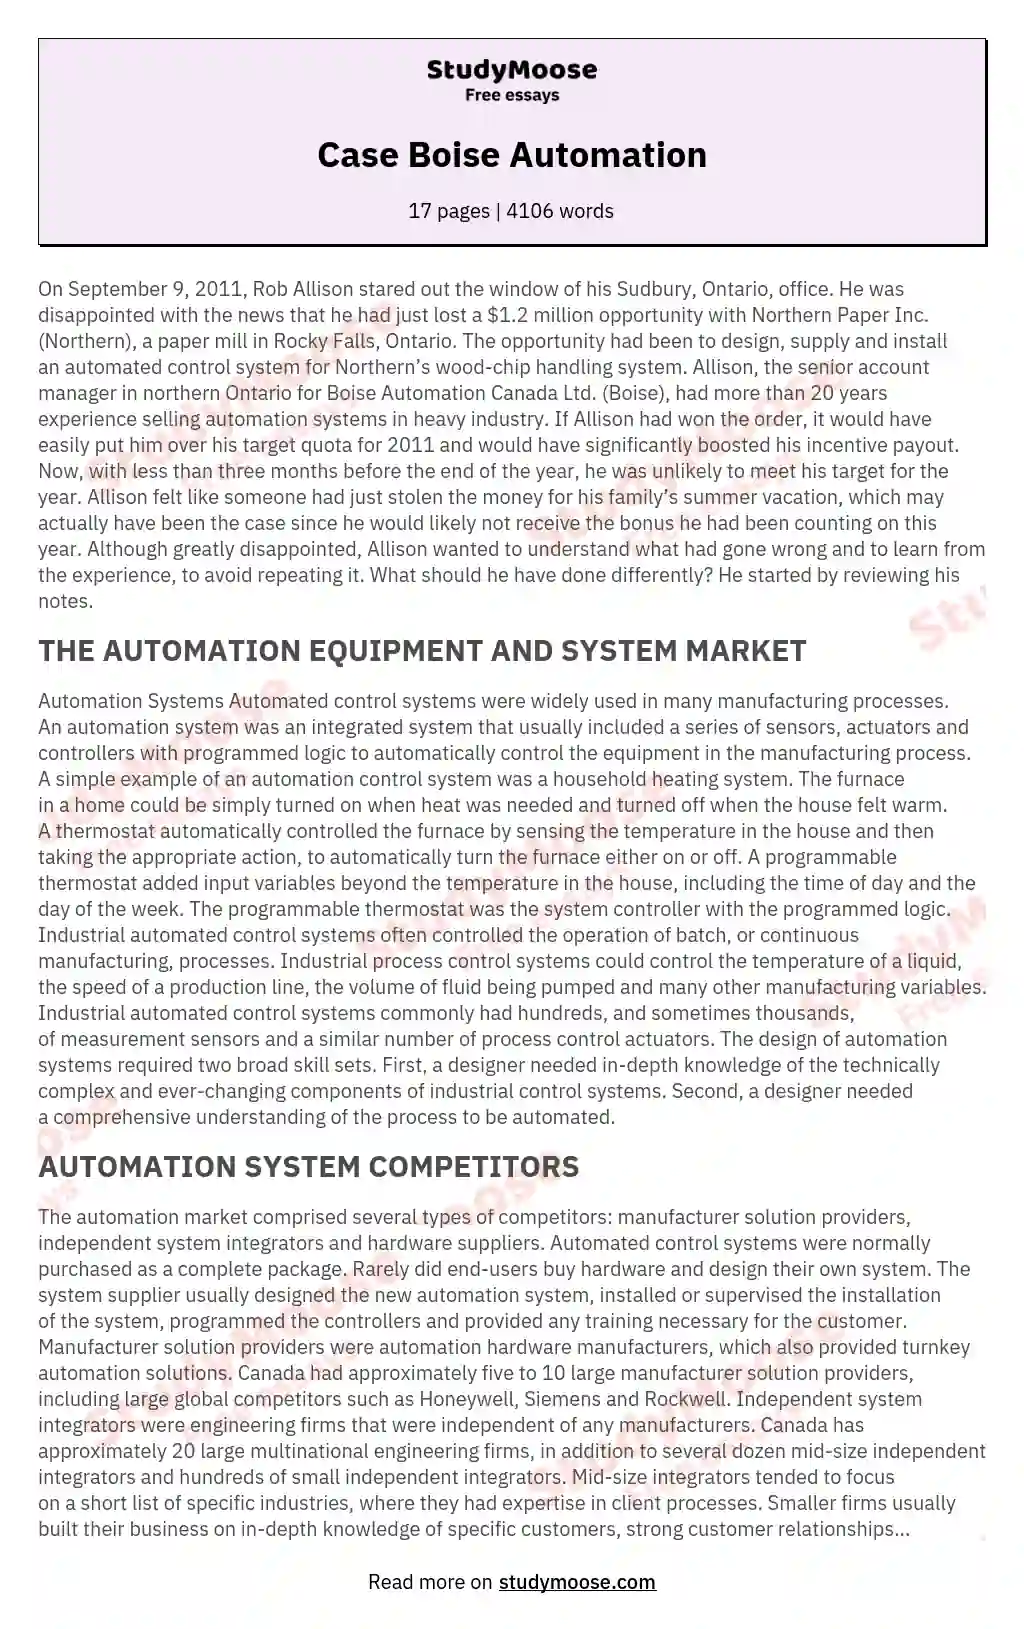 Case Boise Automation